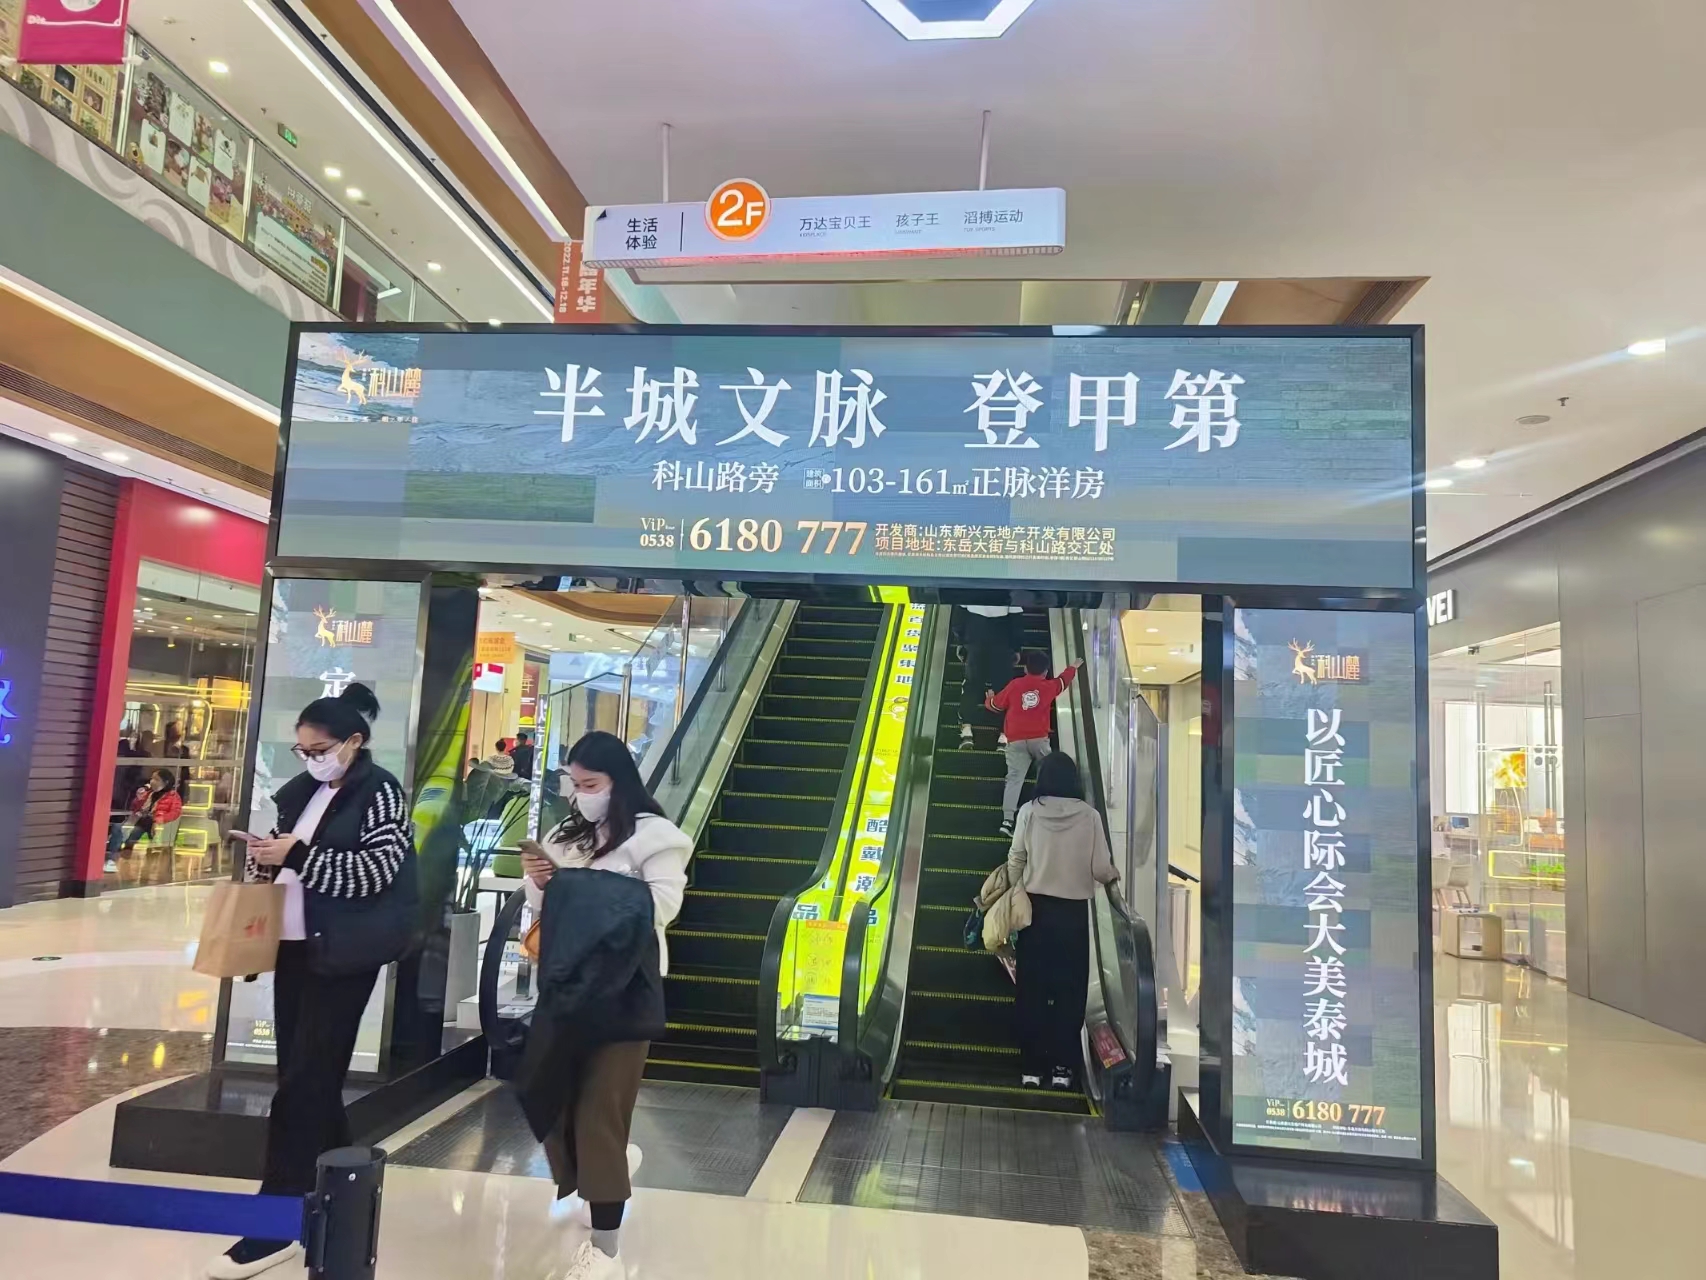 山东泰安泰安万达广场大商业商超卖场内部LCD电子屏